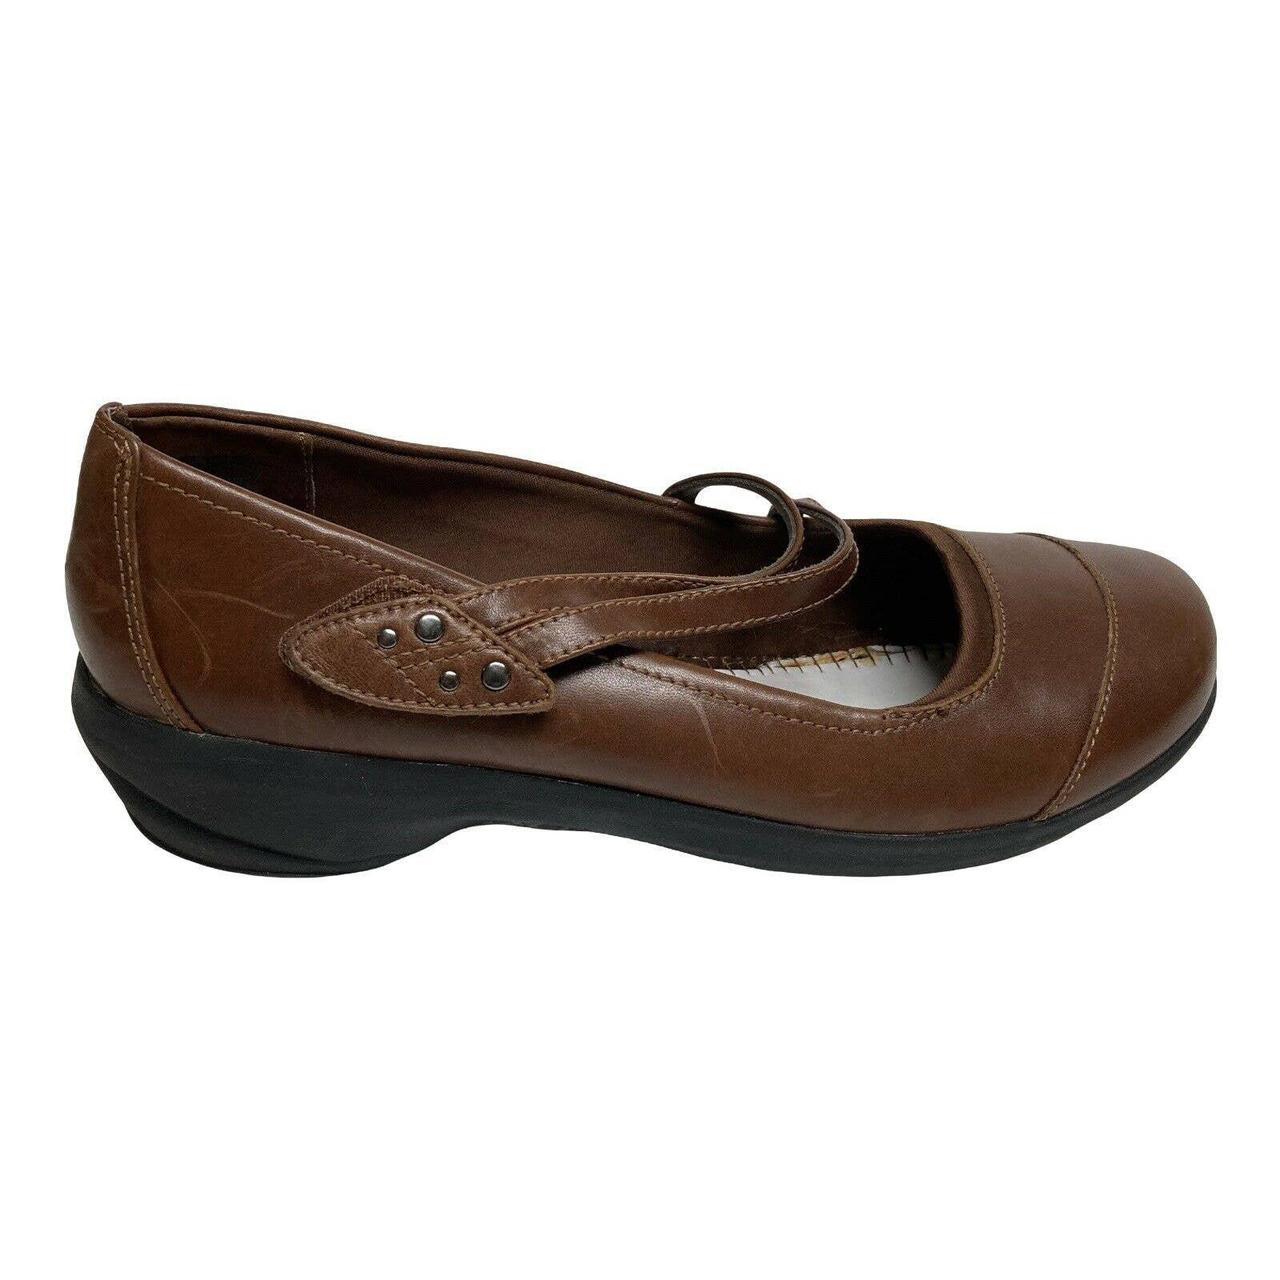 ABEO Smart 3595 Mary Jane Shoes Women's Size 8.5... - Depop